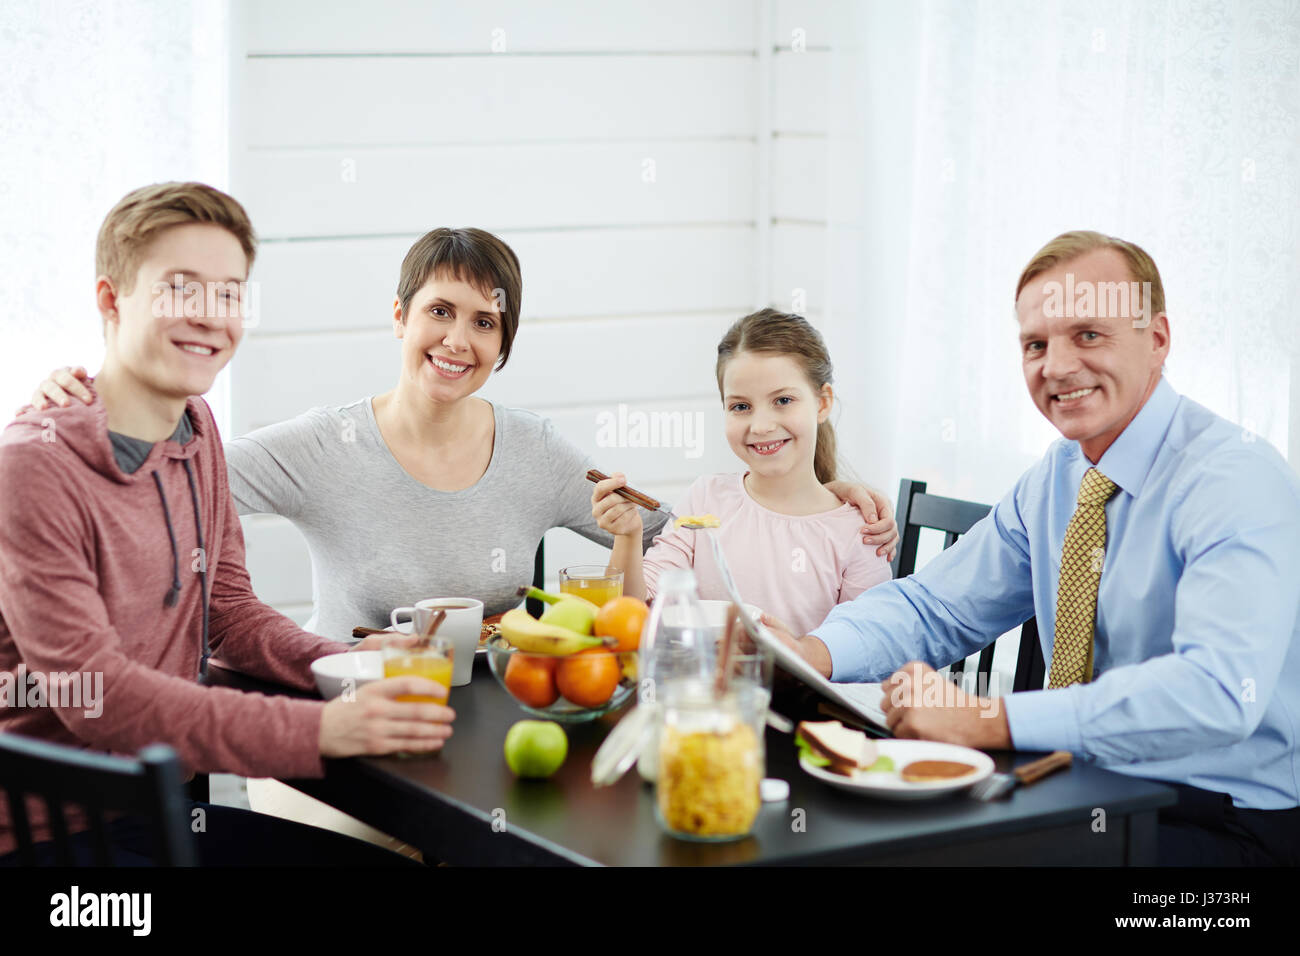 Family Idyll at Breakfast Stock Photo